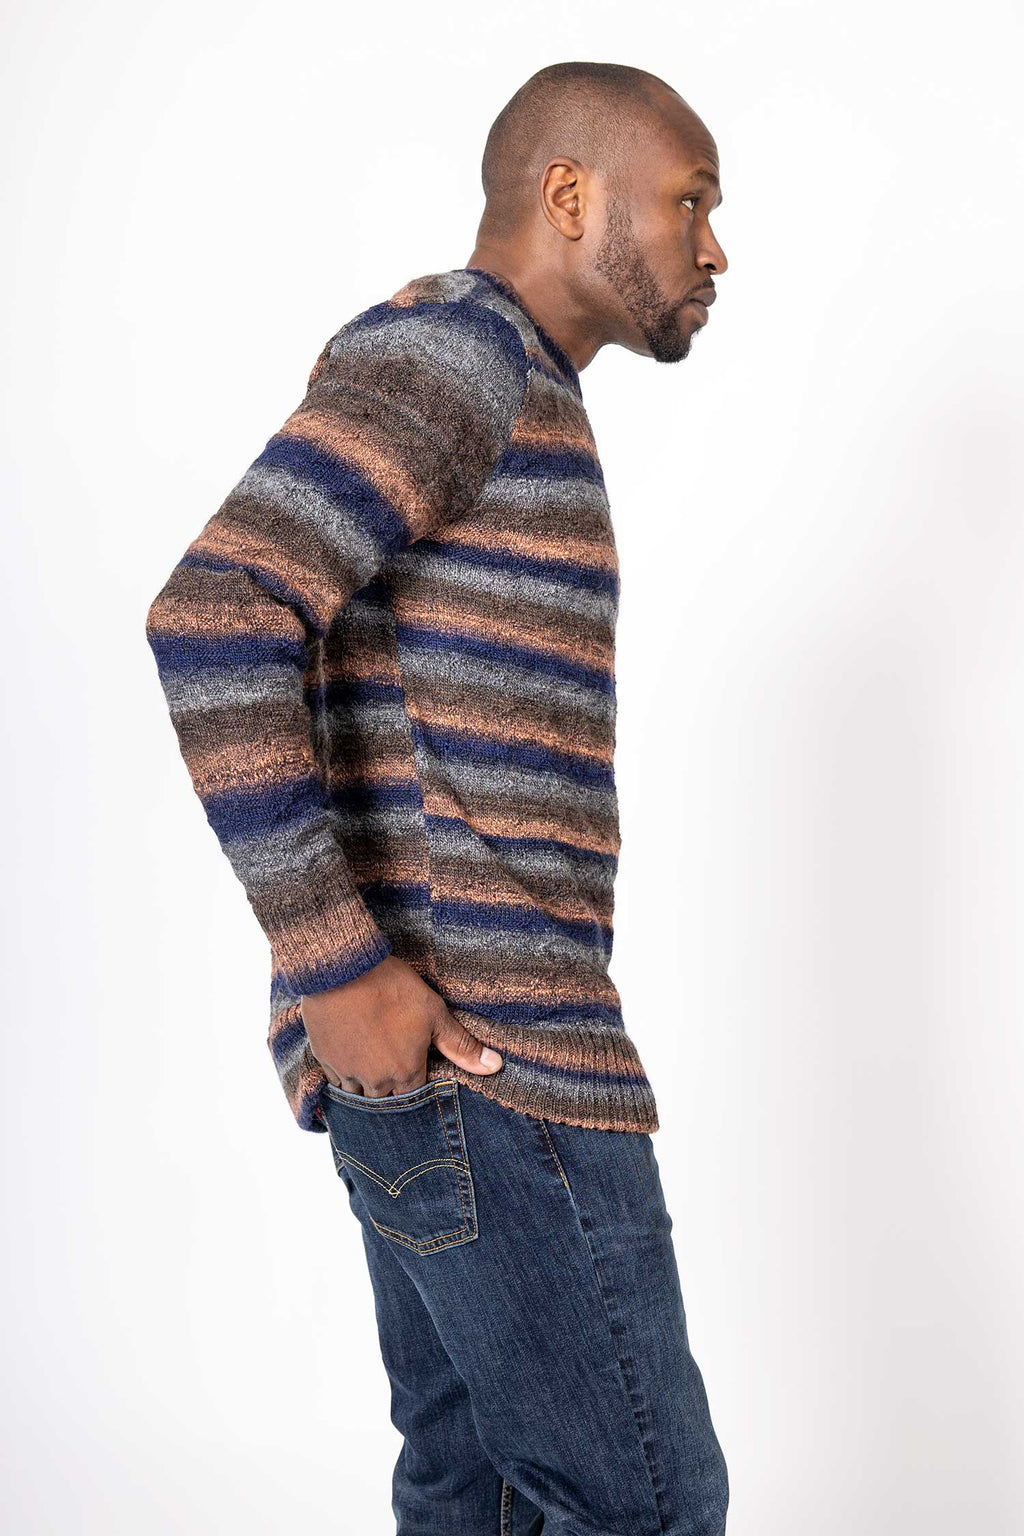 Inca Spun Sweater